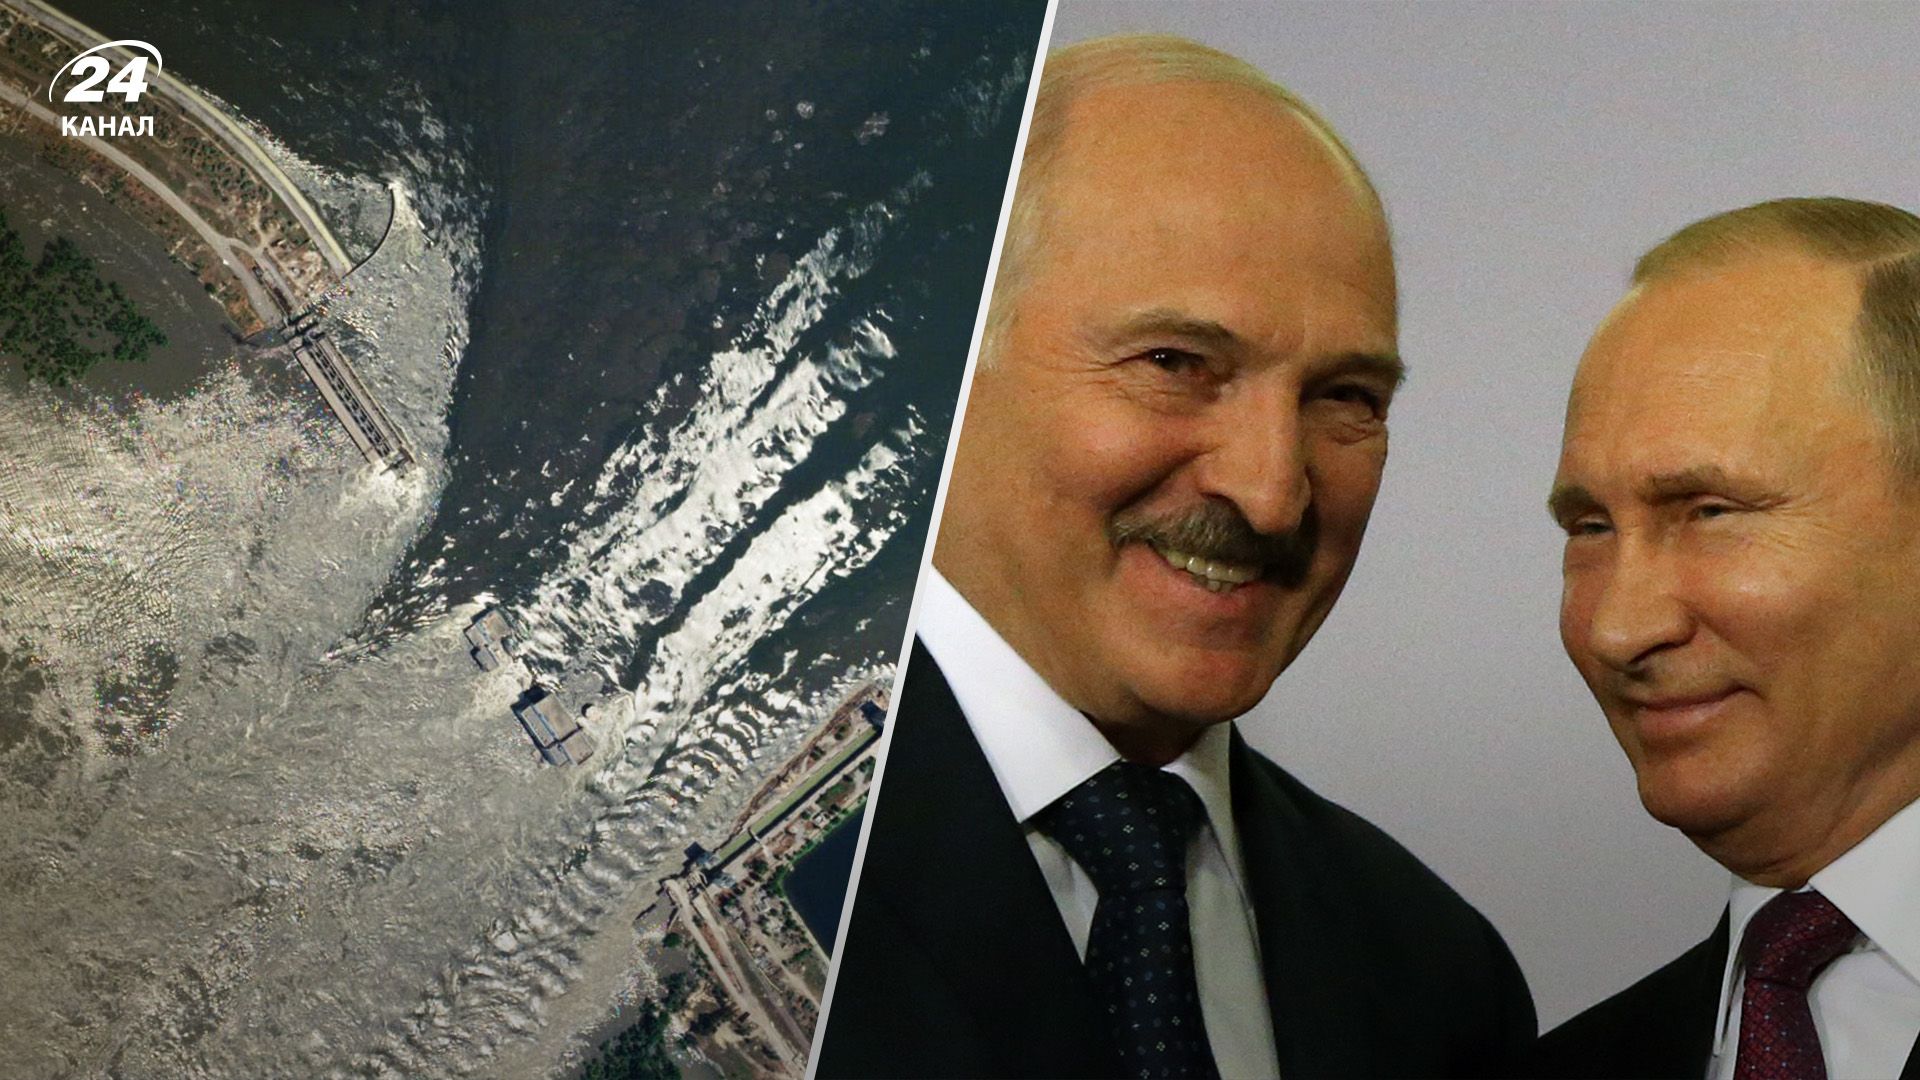 Зустріч Путіна й Лукашенка пов'язана з підривом Каховської ГЕС